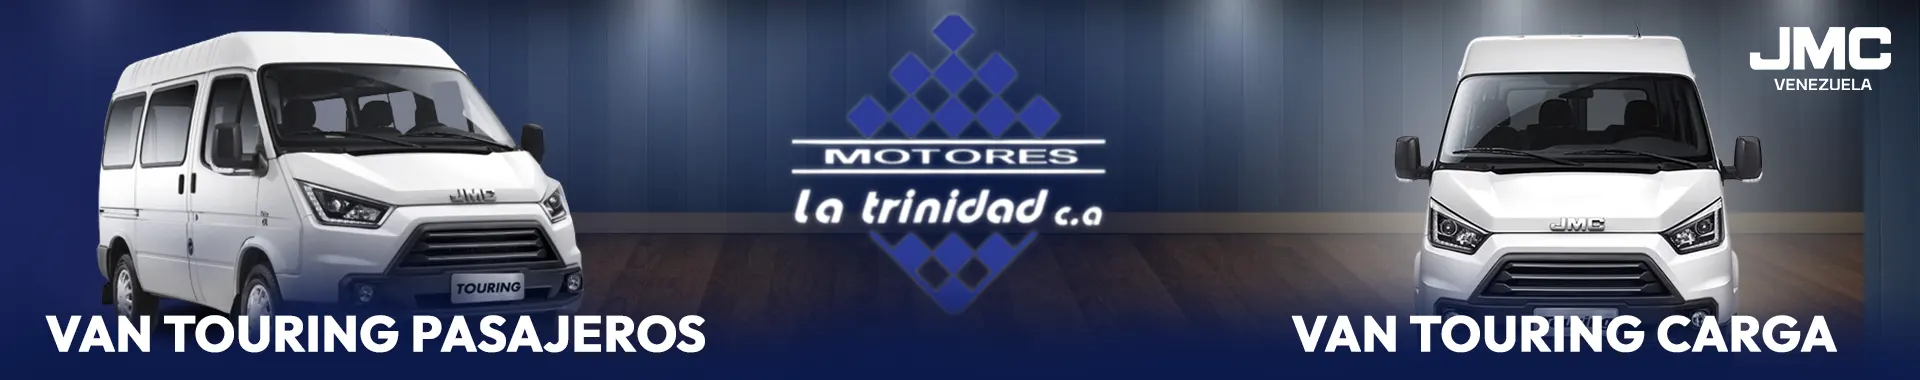 Imagen 1 del perfil de Motores La Trinidad - Autos